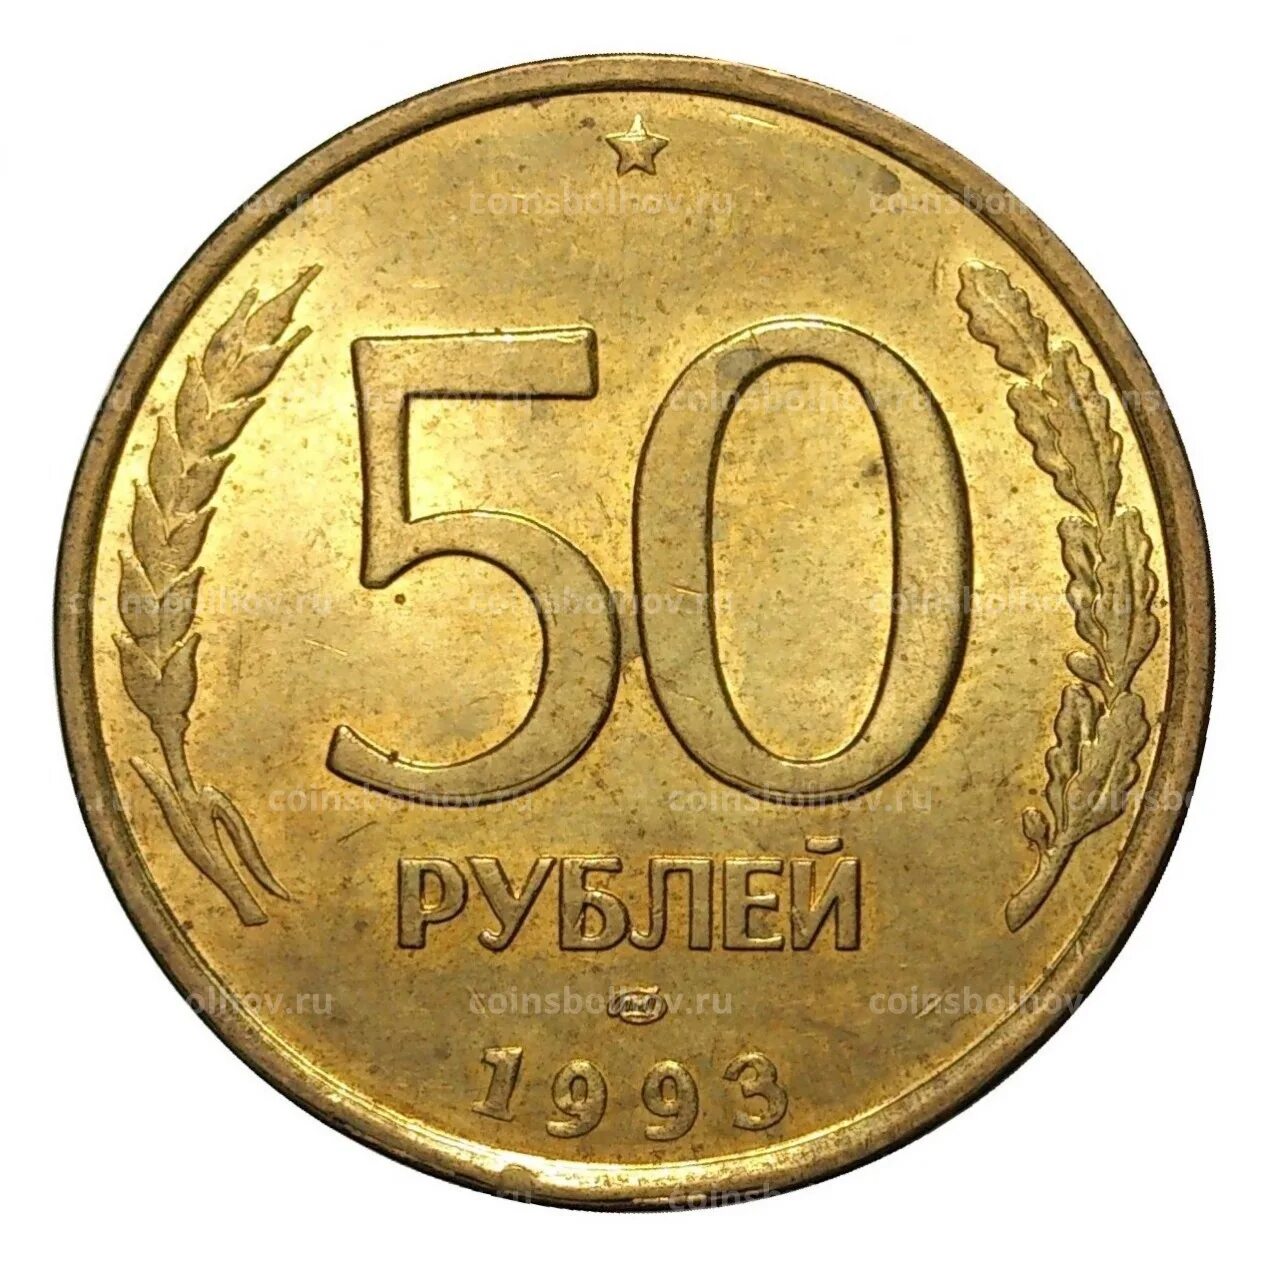 35 50 в рублях. 50 Рублей 1993 года. Монета 50 рублей 1993 года ЛМД. Пятьдесят рублей 1993. 50 Рублей.